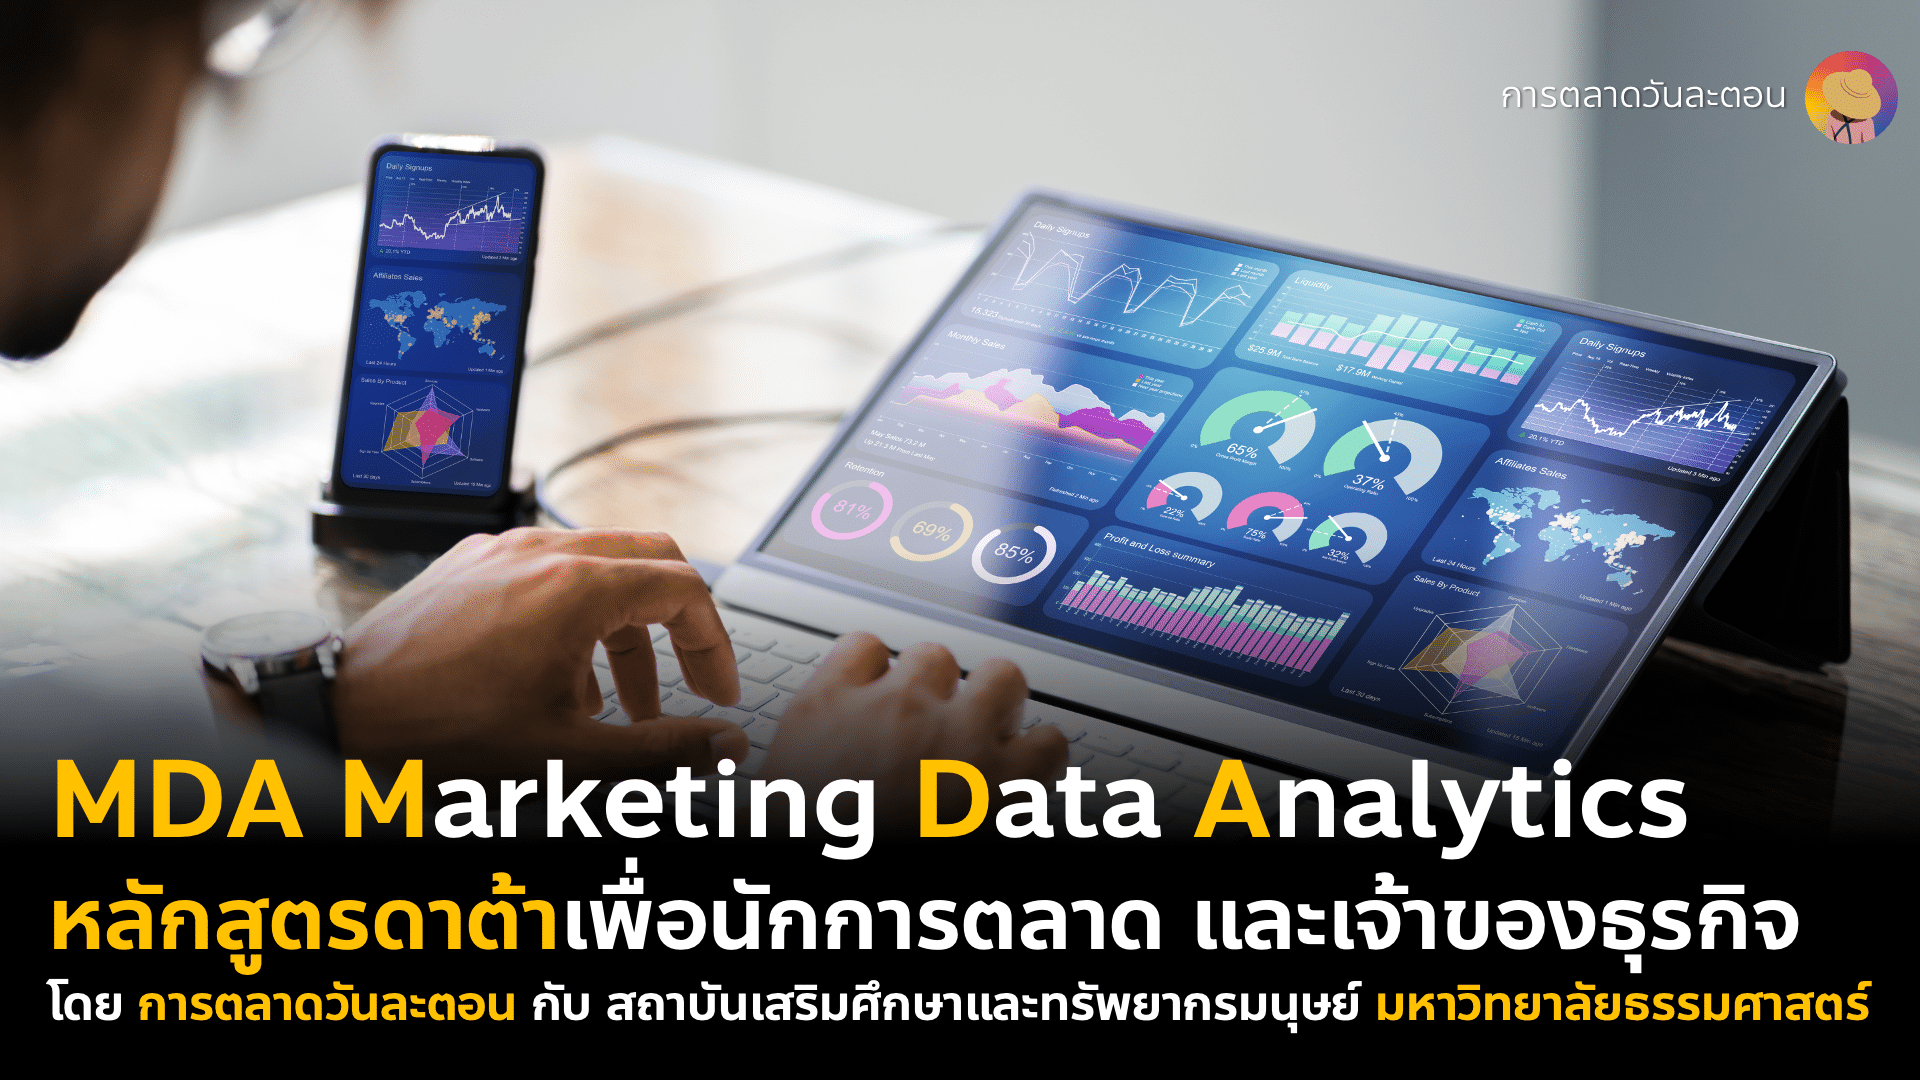 หลักสูตร MDA Marketing Data Analytics ดาต้าเพื่อนักการตลาด ผู้บริหาร และเจ้าของธุรกิจ ที่ต้องการเริ่ม Data-Driven Marketing ปีนี้